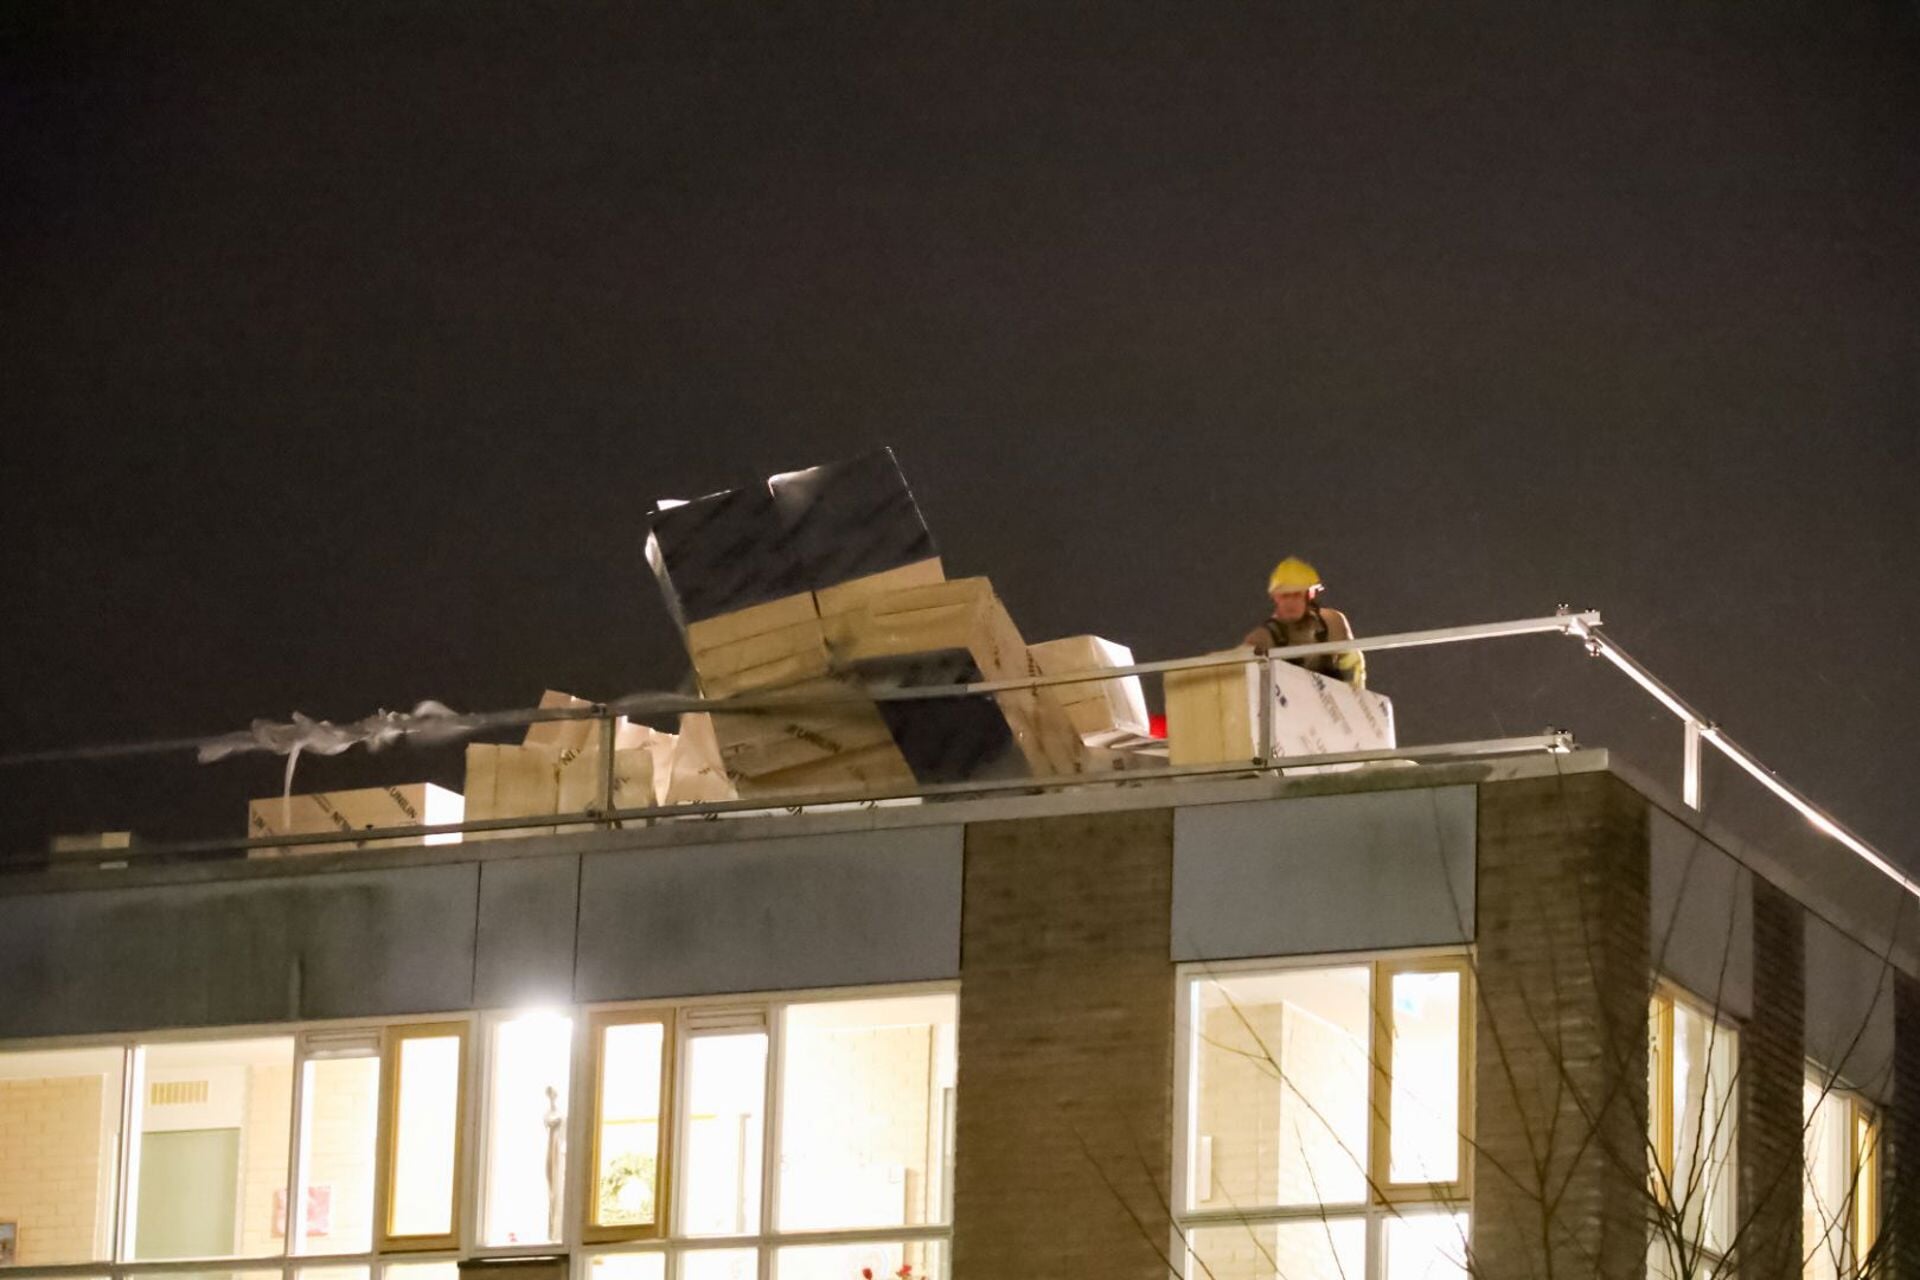 De brandweer moest tegen middernacht wel diverse materialen op een dak aan de H.A. Lorentzweg in Bussum veilig stellen.